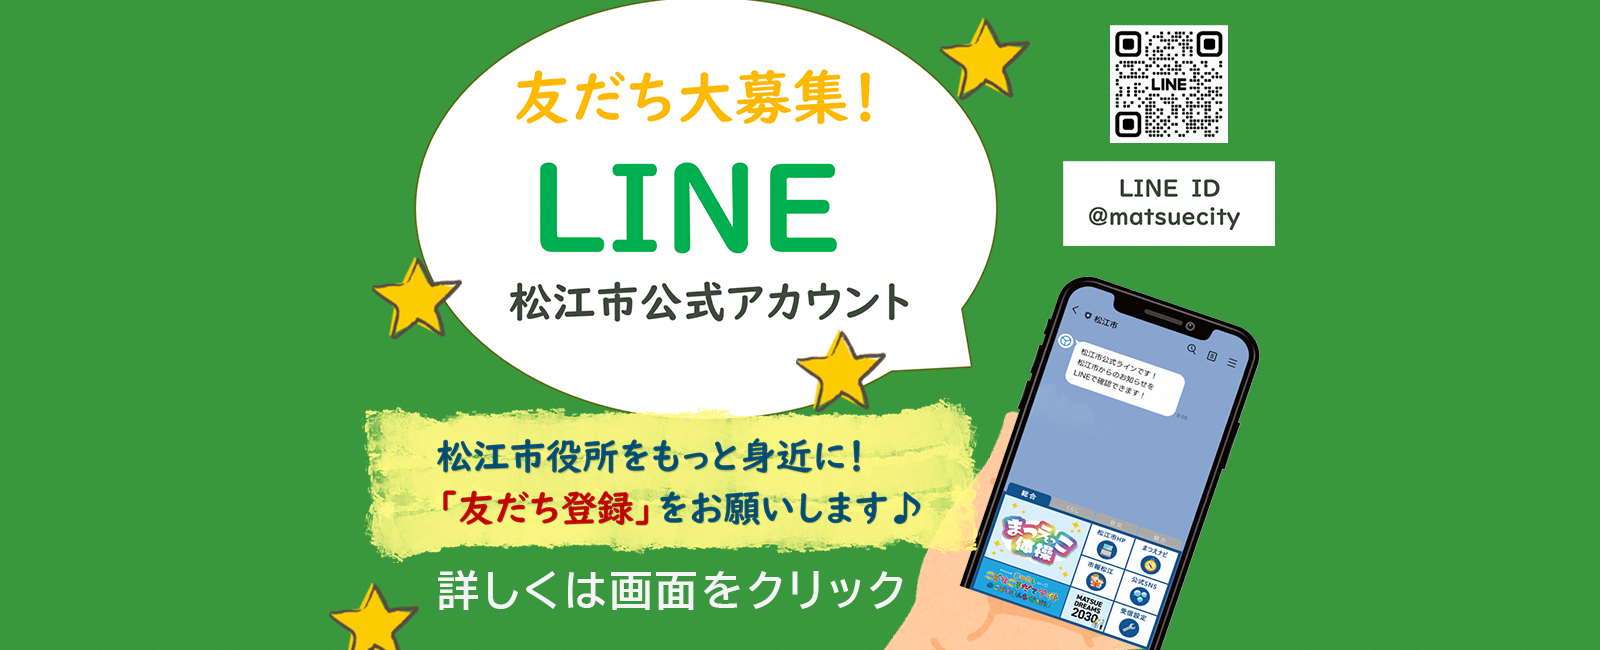 松江市公式LINEのバナー画像。クリックすると詳細ページへ移動します。